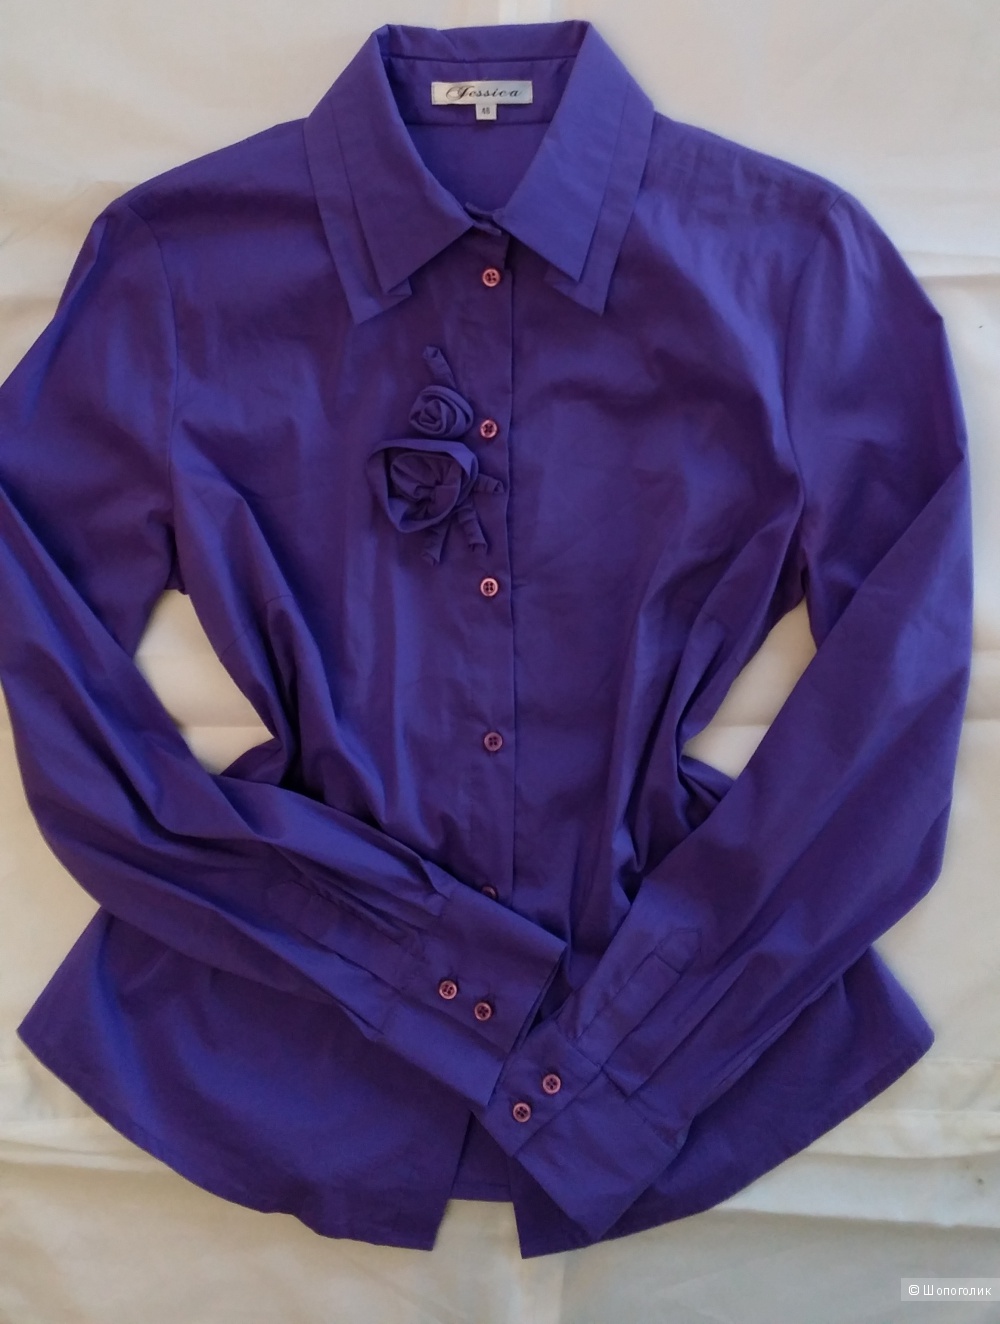 Очень нежная блузка (рубашка) от бренда Jessica, 46-48 размера